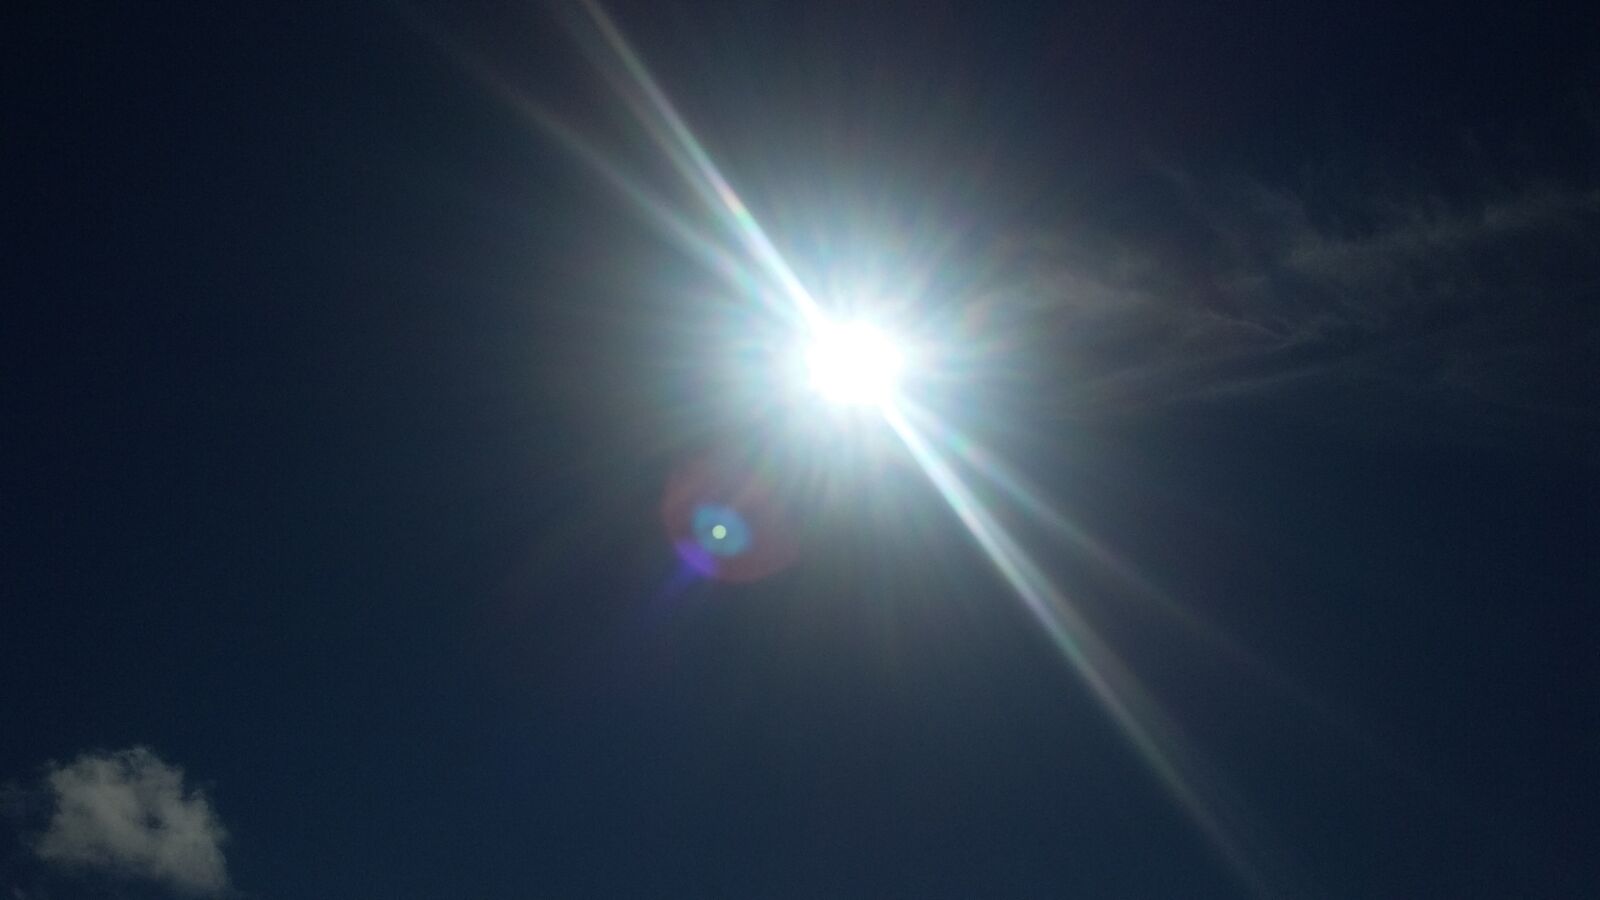 Samsung Galaxy S4 Mini sample photo. Sunshine, sun, sunny photography